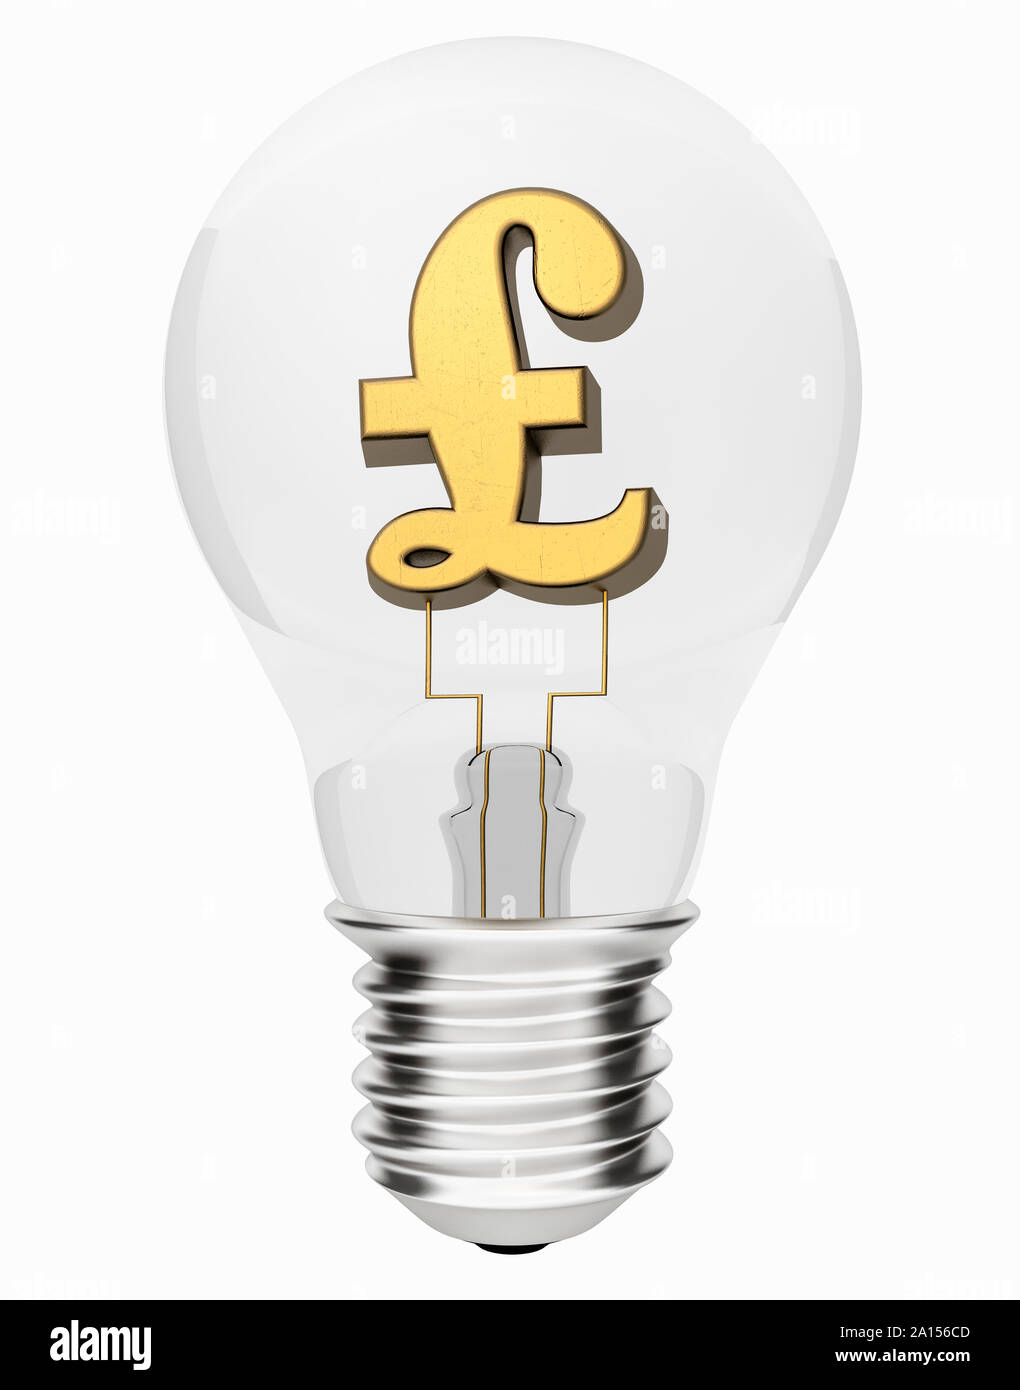 Bombilla con libras esterlinas GBP dentro del símbolo de moneda - el coste de la electricidad concepto Foto de stock